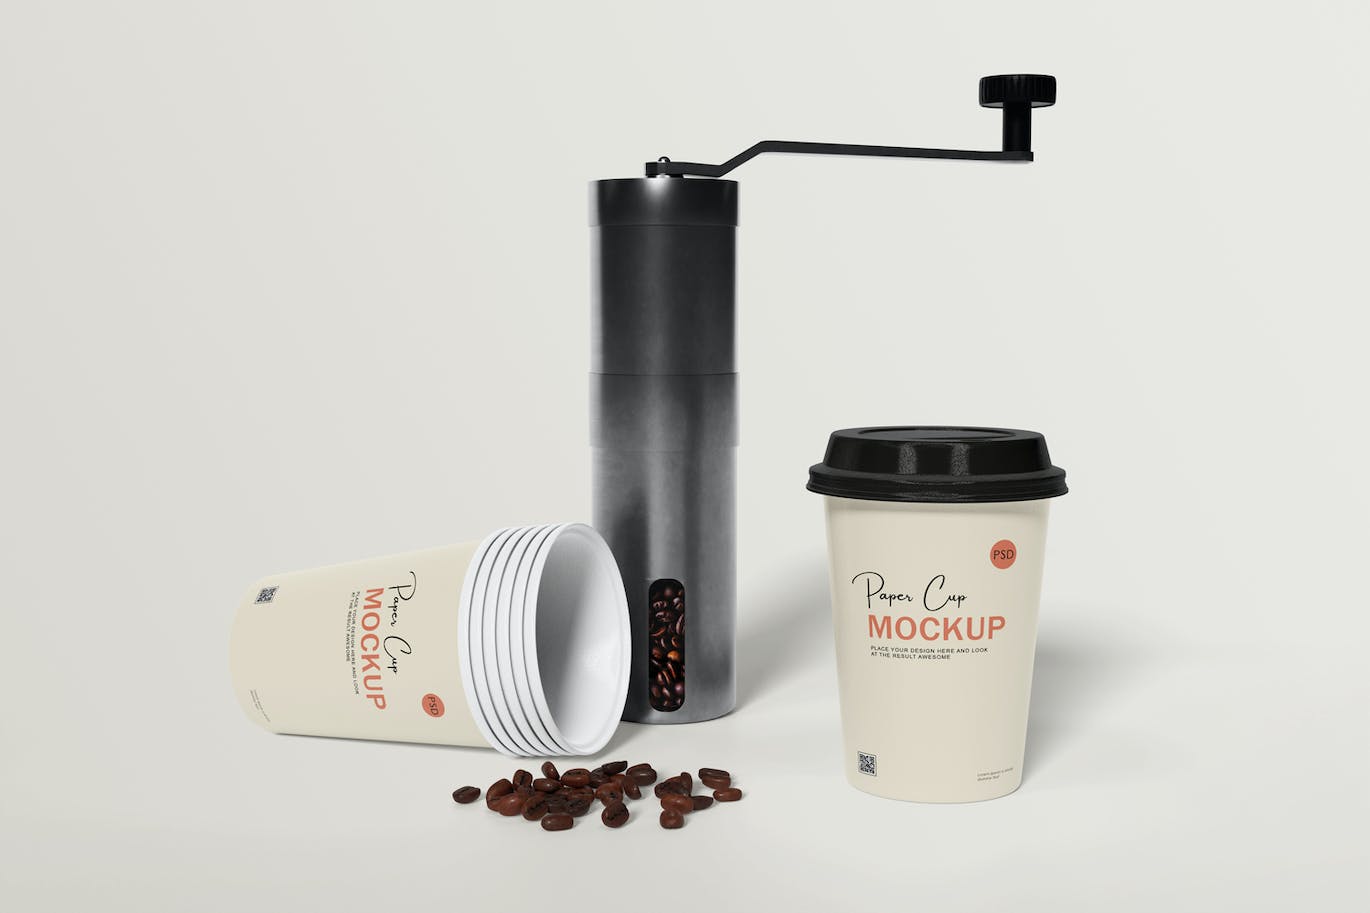 咖啡机咖啡杯包装设计样机 Coffee cup mockup with coffee machine 样机素材 第7张